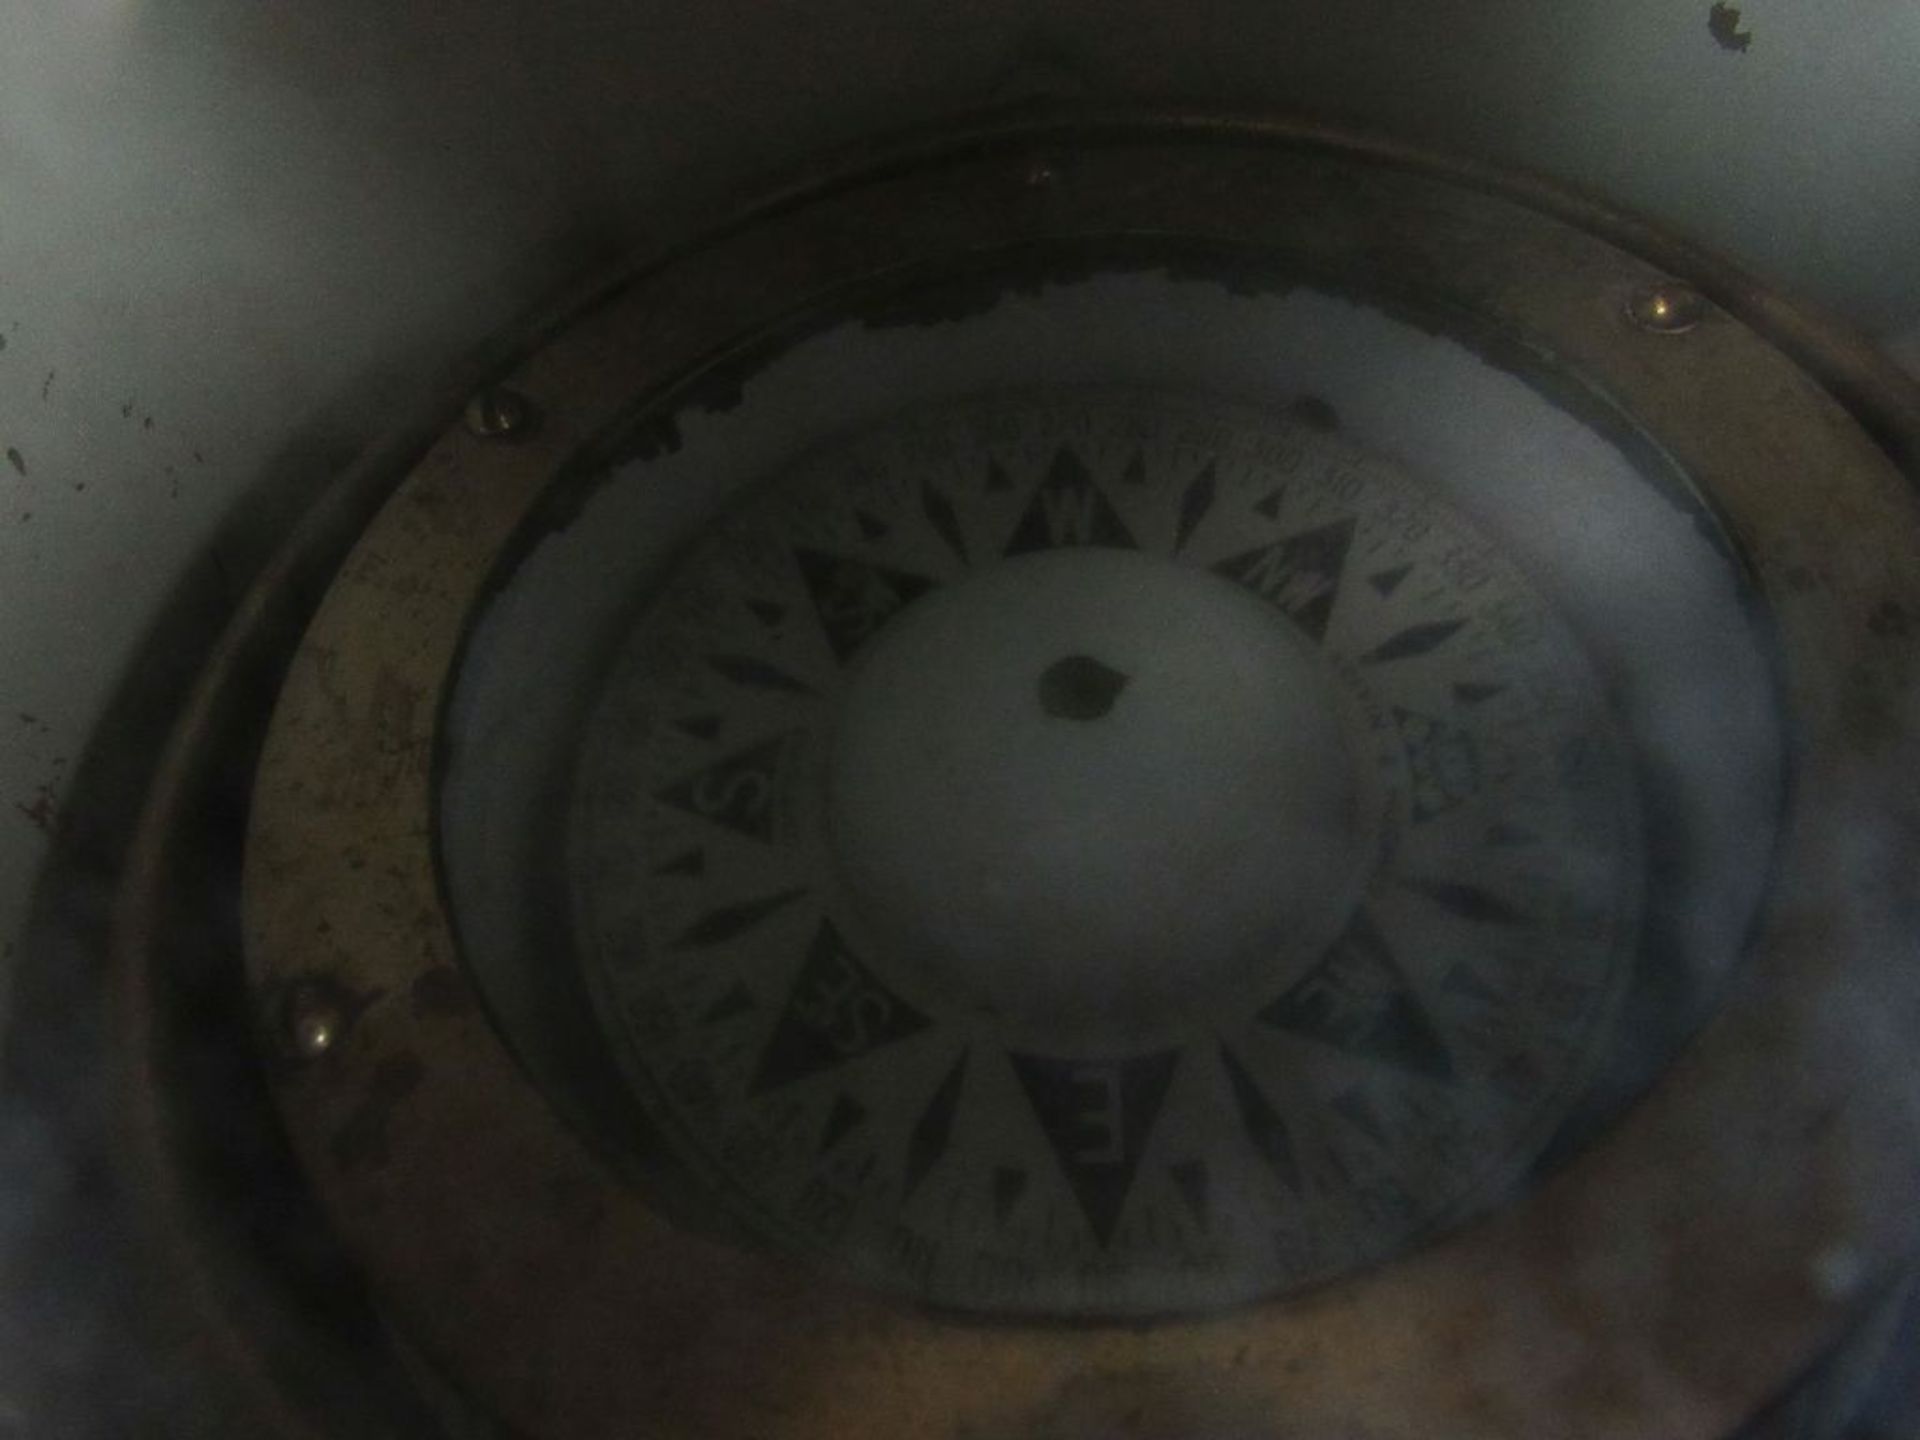 Kompass Celvin & Hockes England Messing Durchmesser 24cm- - -20.00 % buyer's premium on the hammer - Bild 2 aus 3